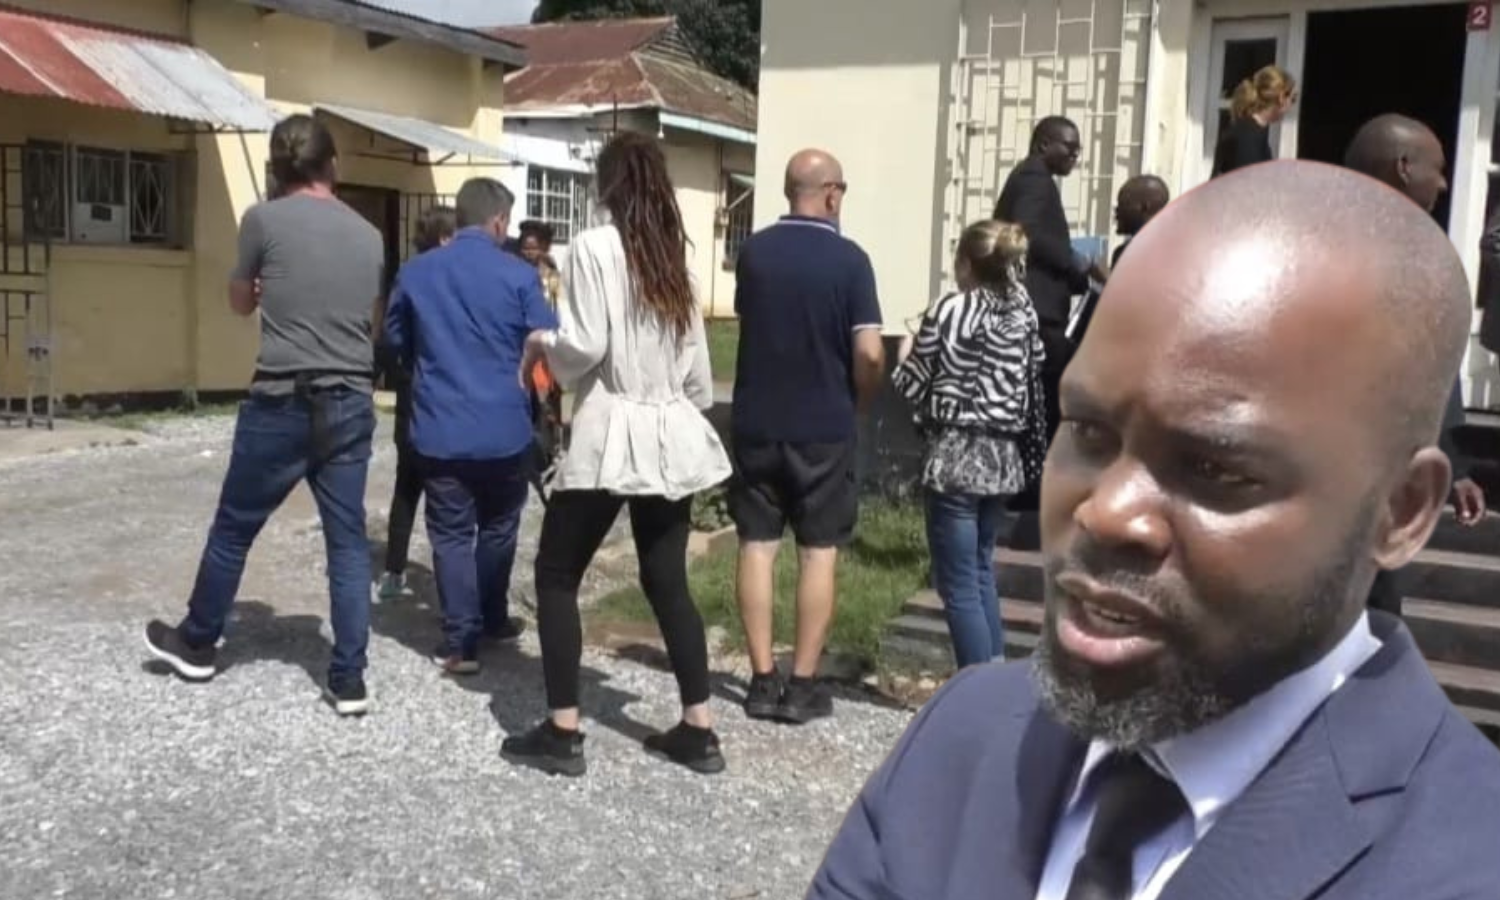 EKSKLUZIVNE SLIKE I VIDEO: Hrvati se danas pojavili pred sudom, ne zna se kad je suđenje